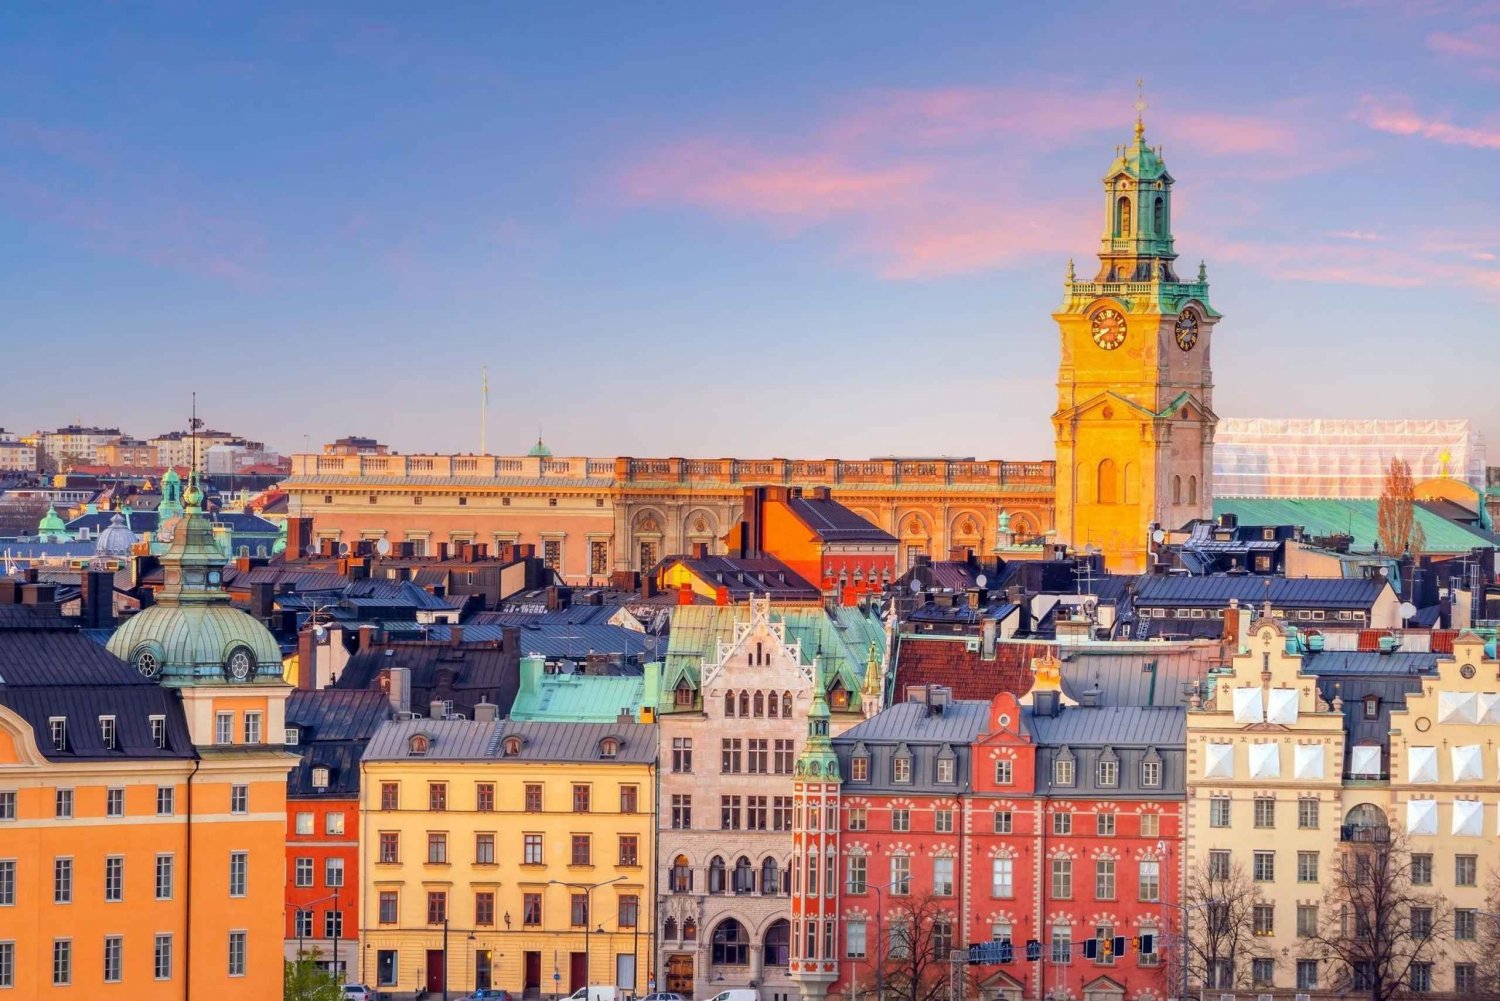 Stockholm: Privat arkitekturresa med en lokal expert